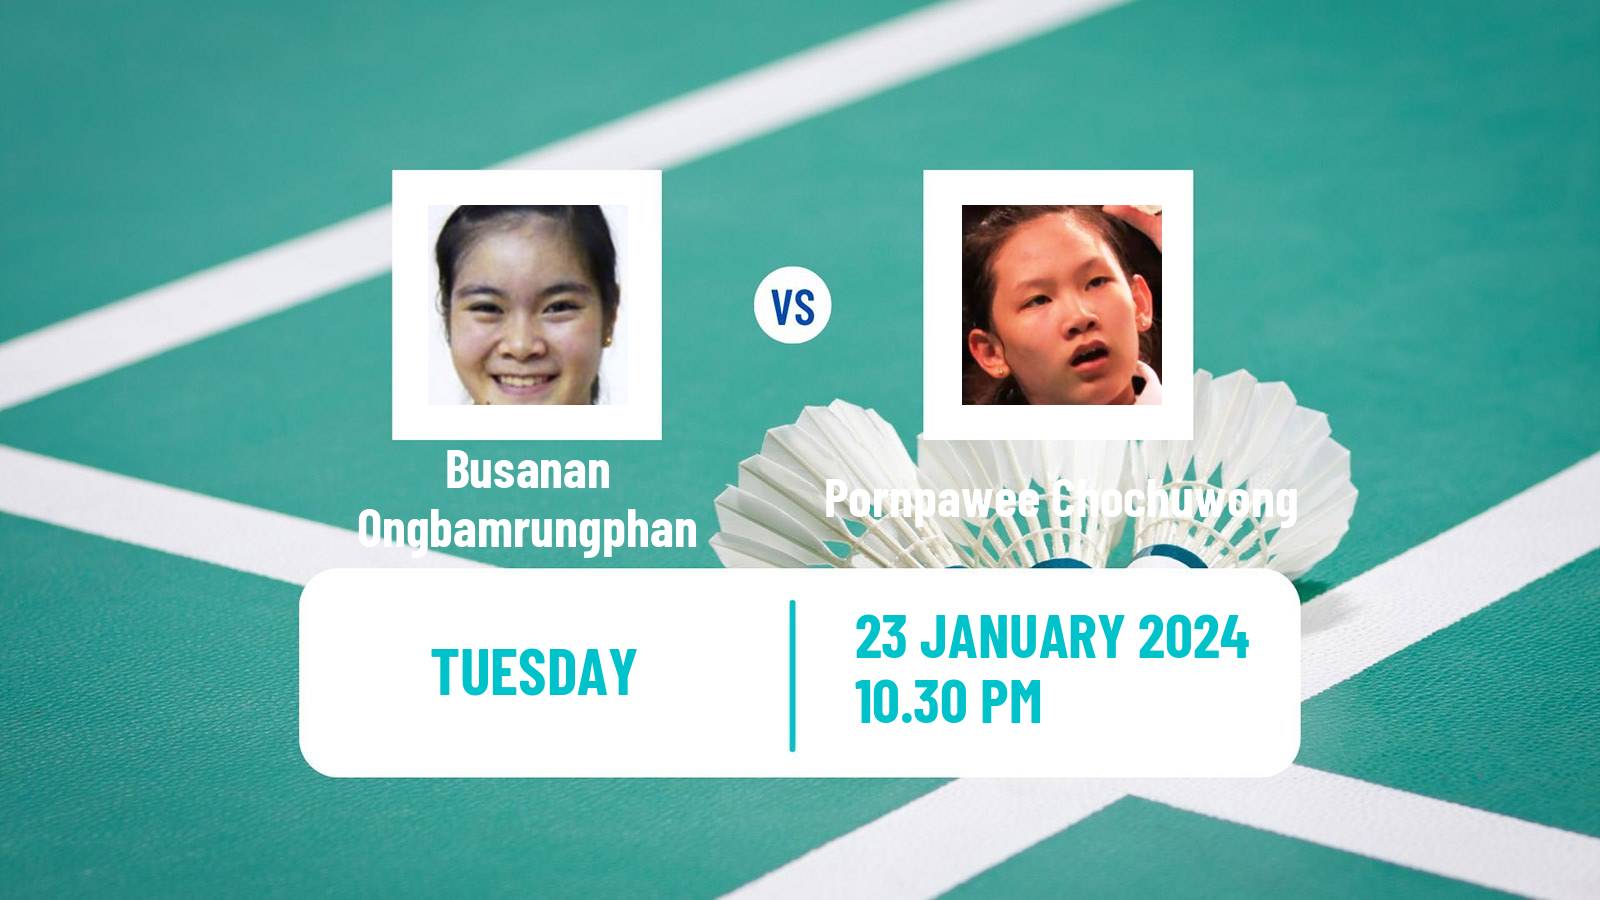 Badminton BWF World Tour Indonesia Masters Women Busanan Ongbamrungphan - Pornpawee Chochuwong